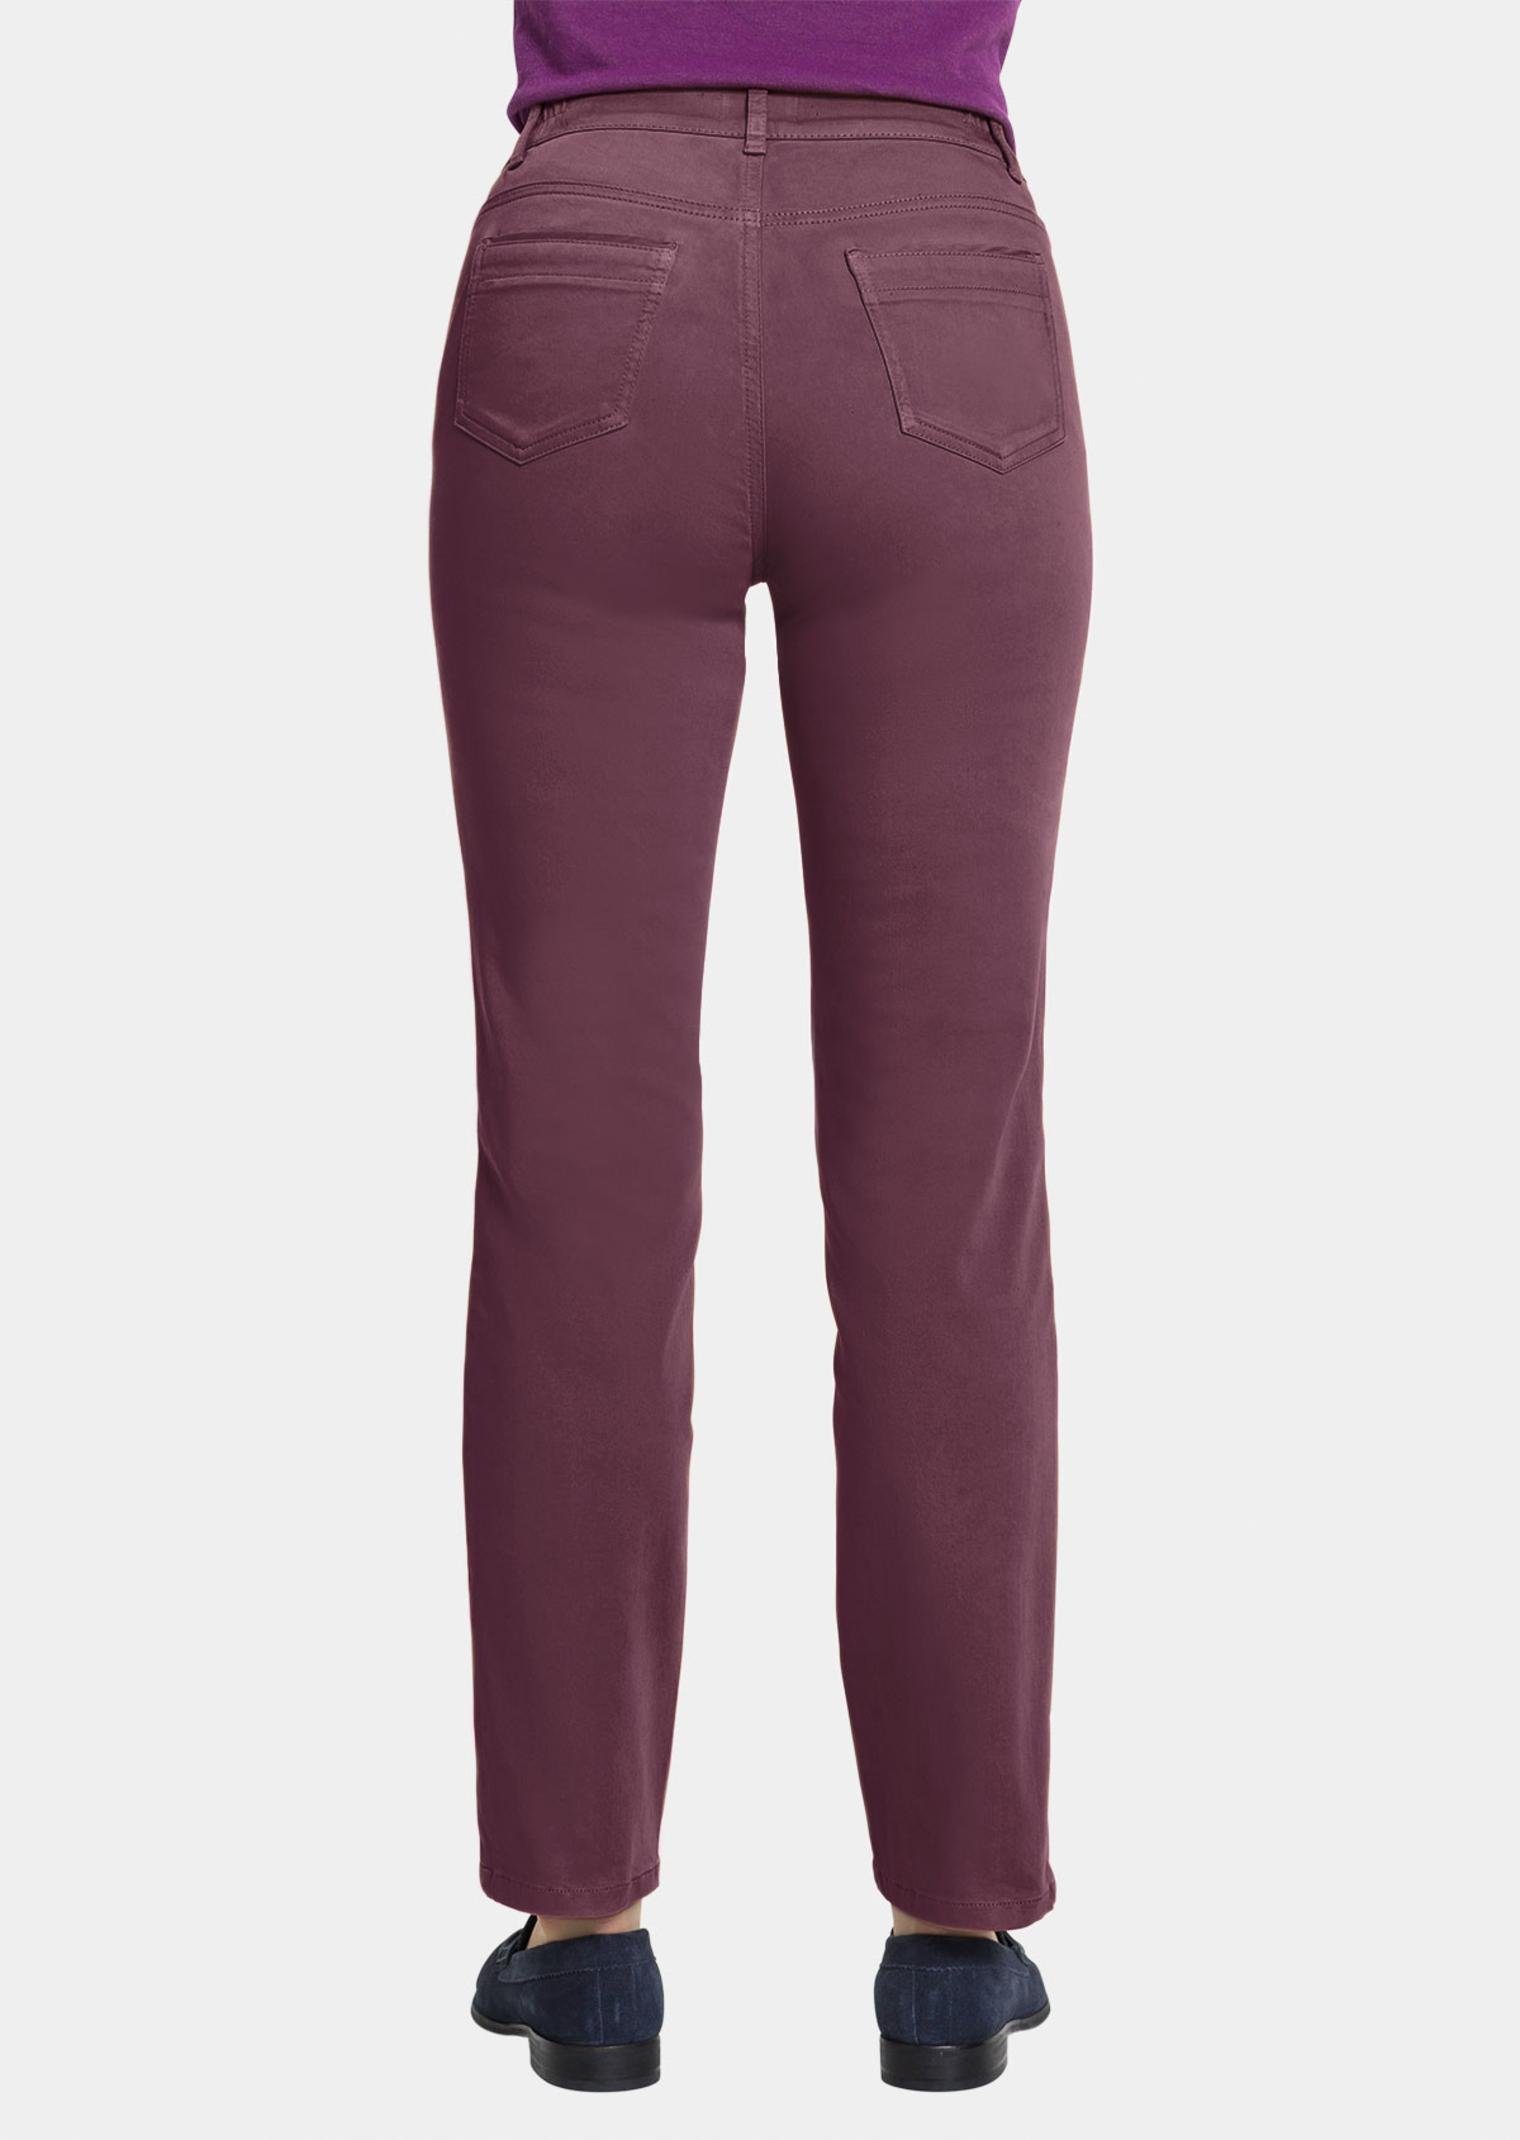 traubenviolett Hose Carla und in Farbe Form jeanstypischer Stoffhose GOLDNER trendstarker